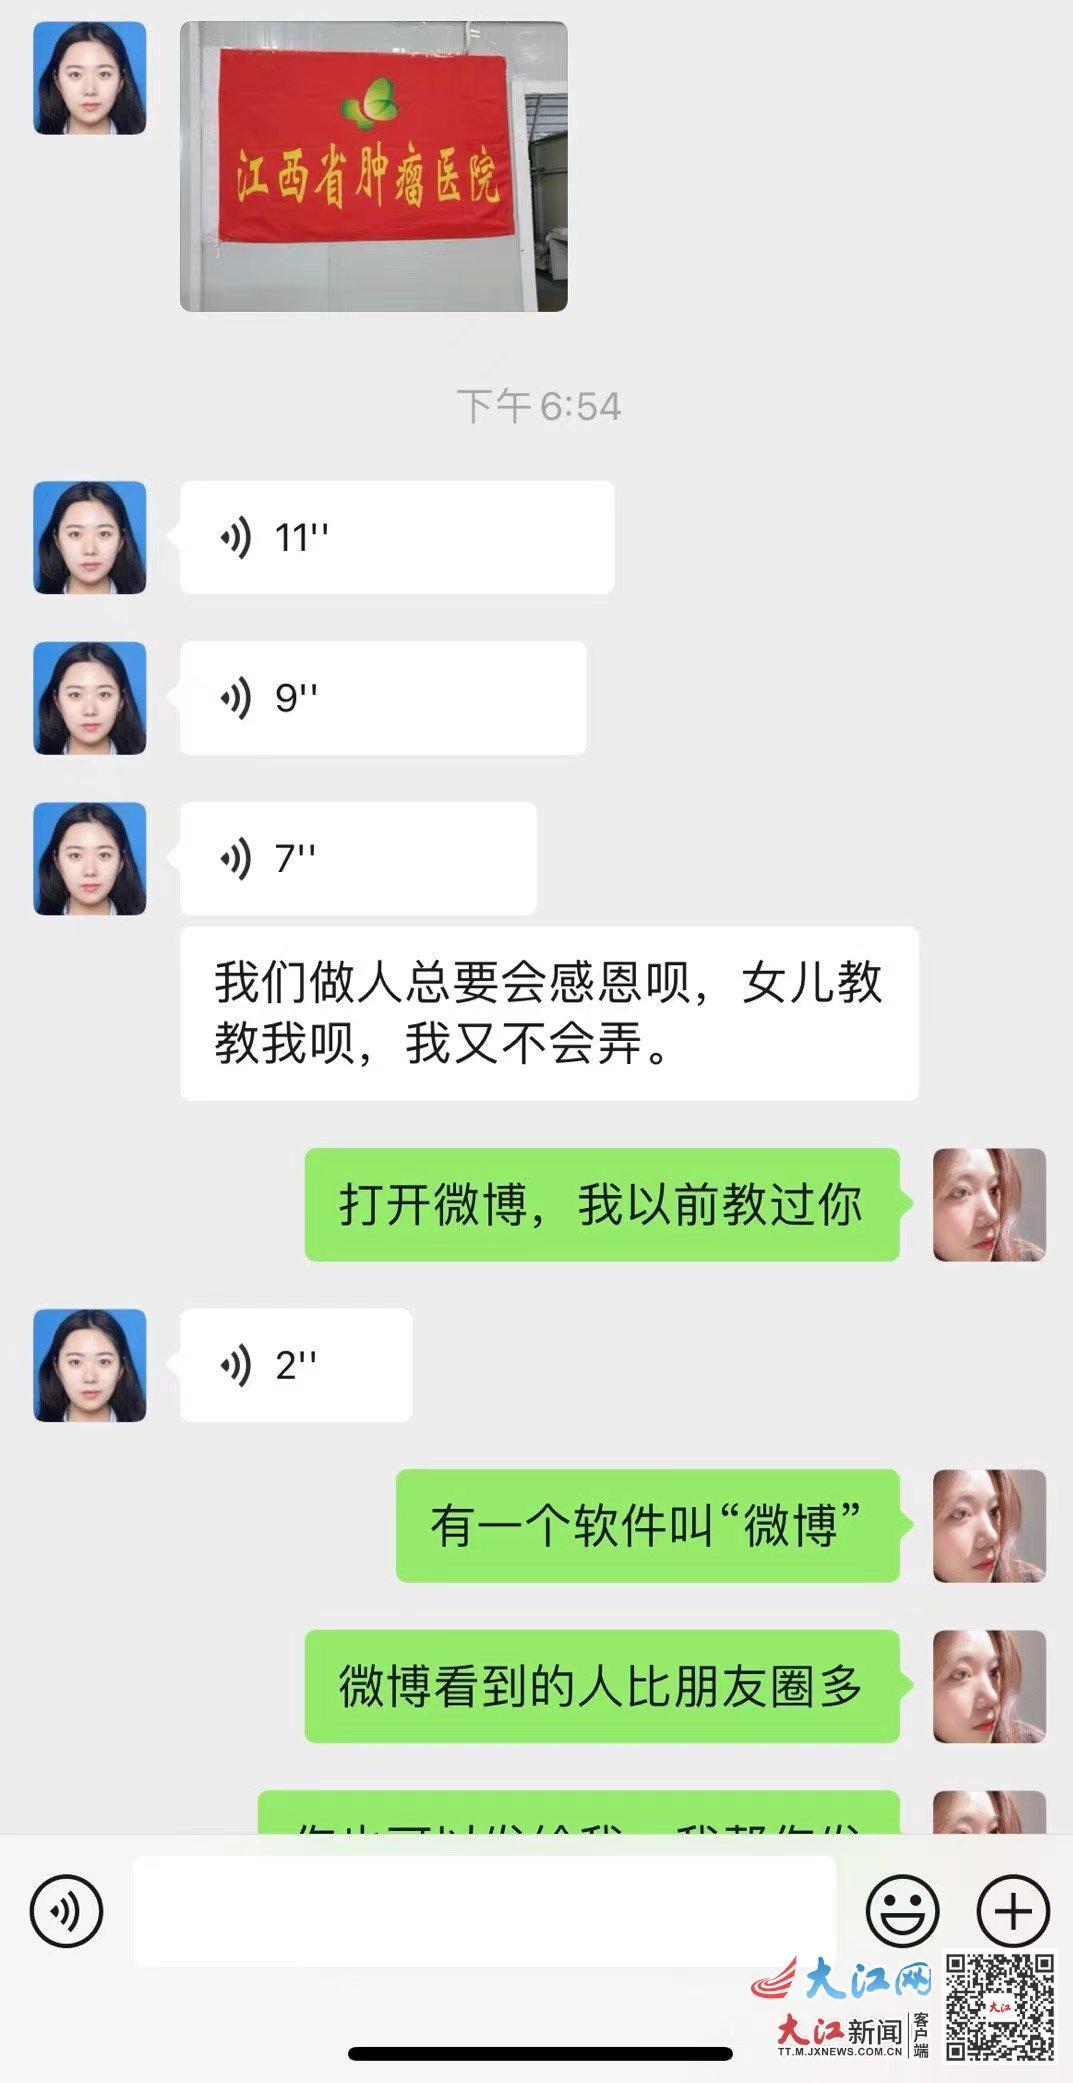 患者女儿徐敏君教妈妈用微博发感谢信的聊天截图